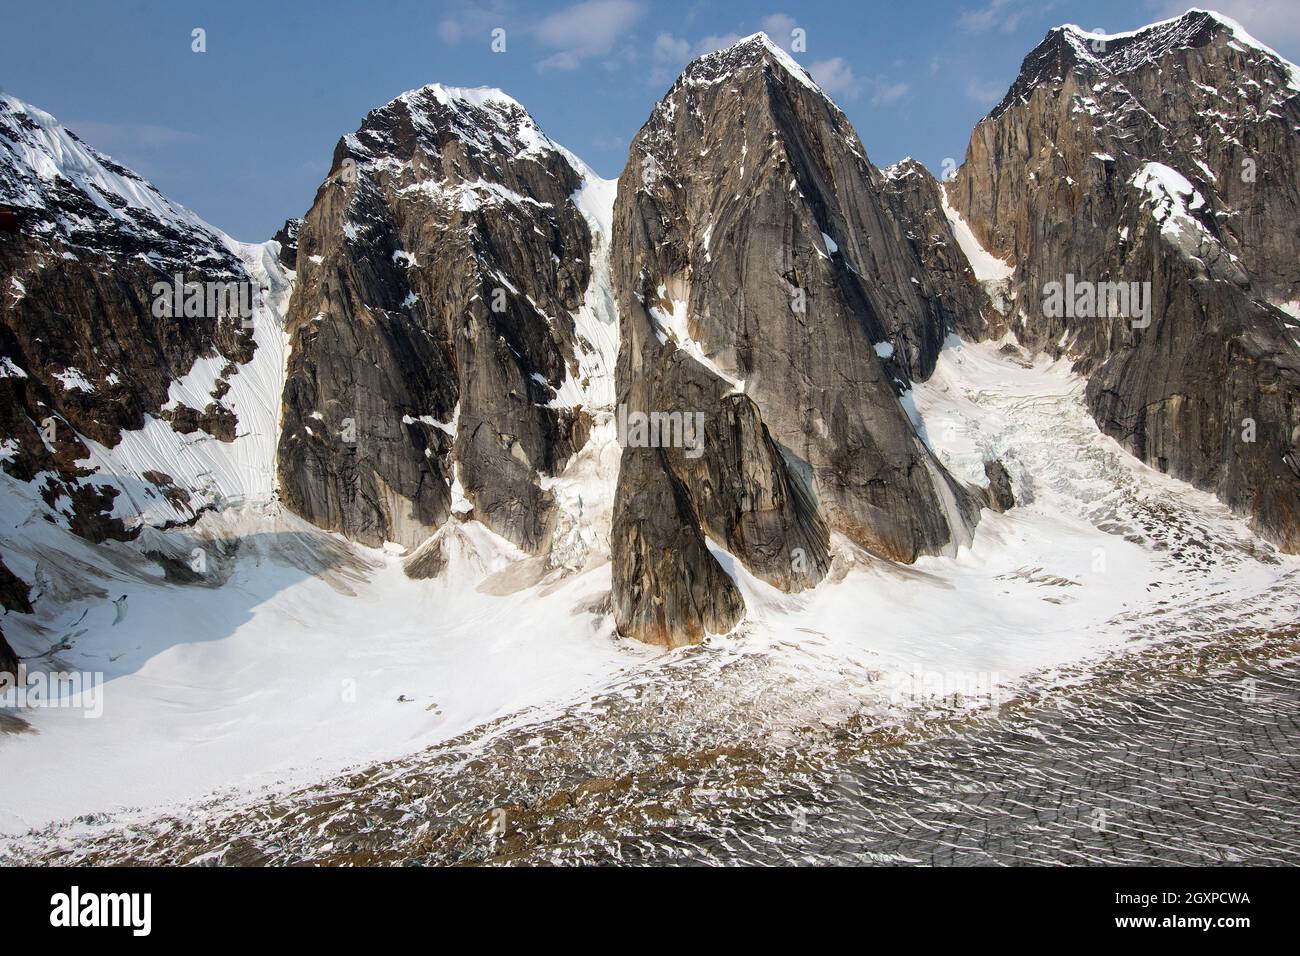 Granite rock formations at Denali National Park and Preserve, Alaska, USA Stock Photo